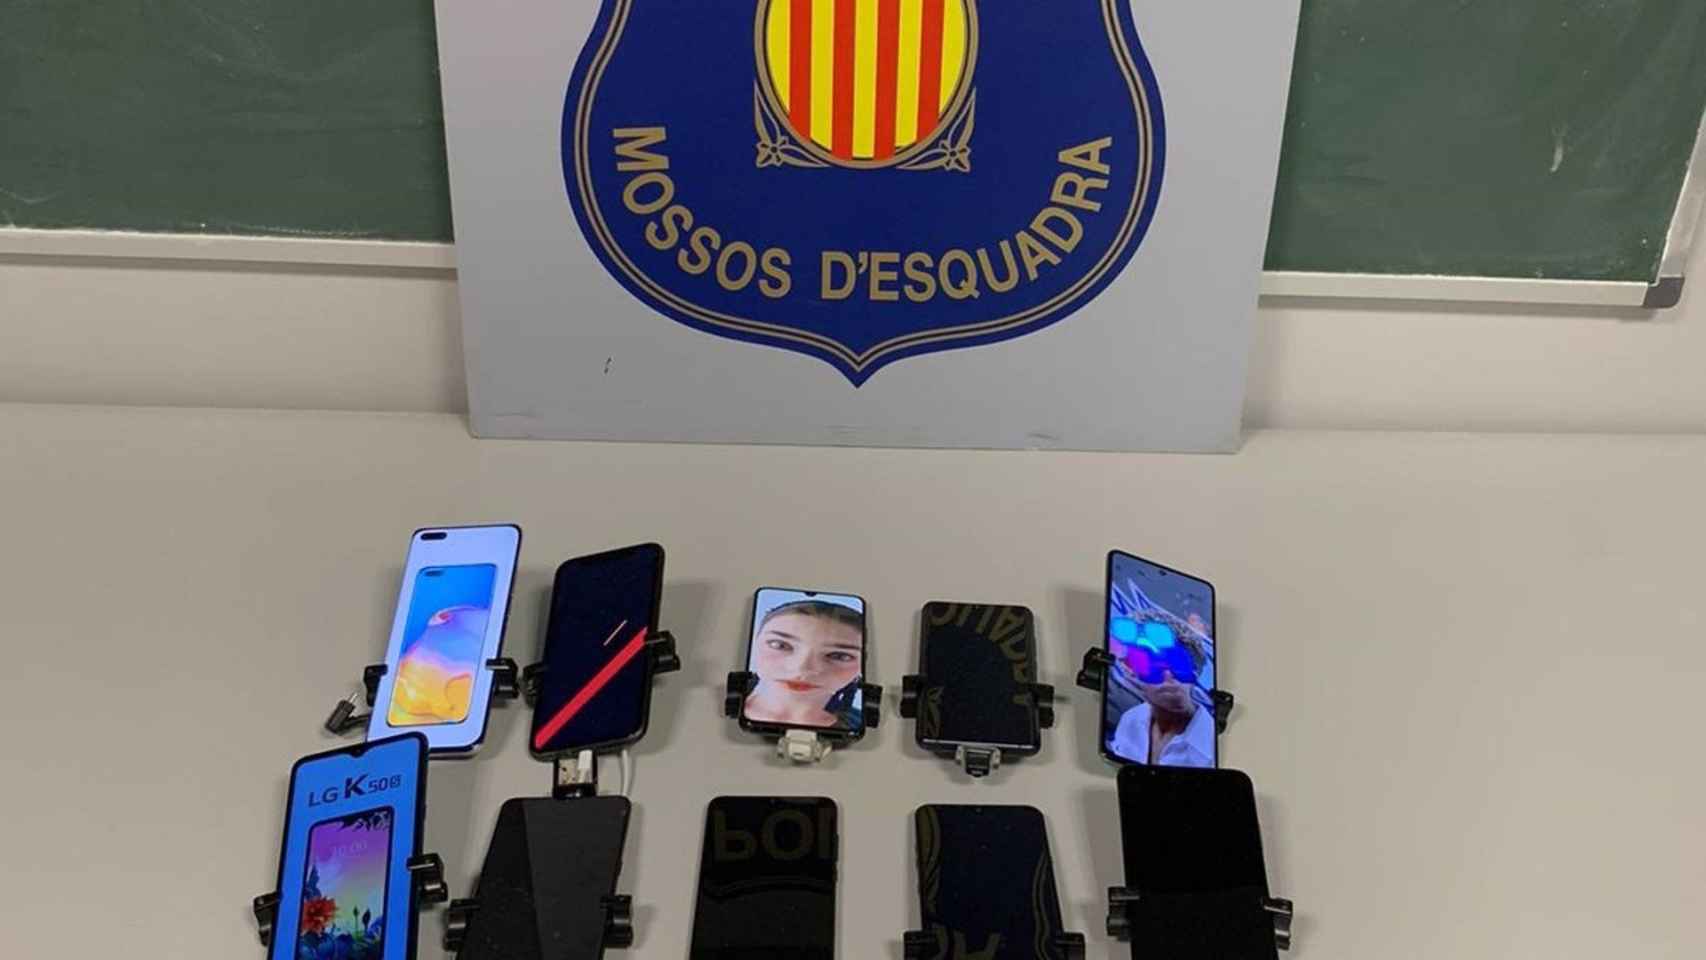 Tres detenidos por 15 teléfonos móvil en una tienda de telefonía / MOSSOS D'ESQUADRA